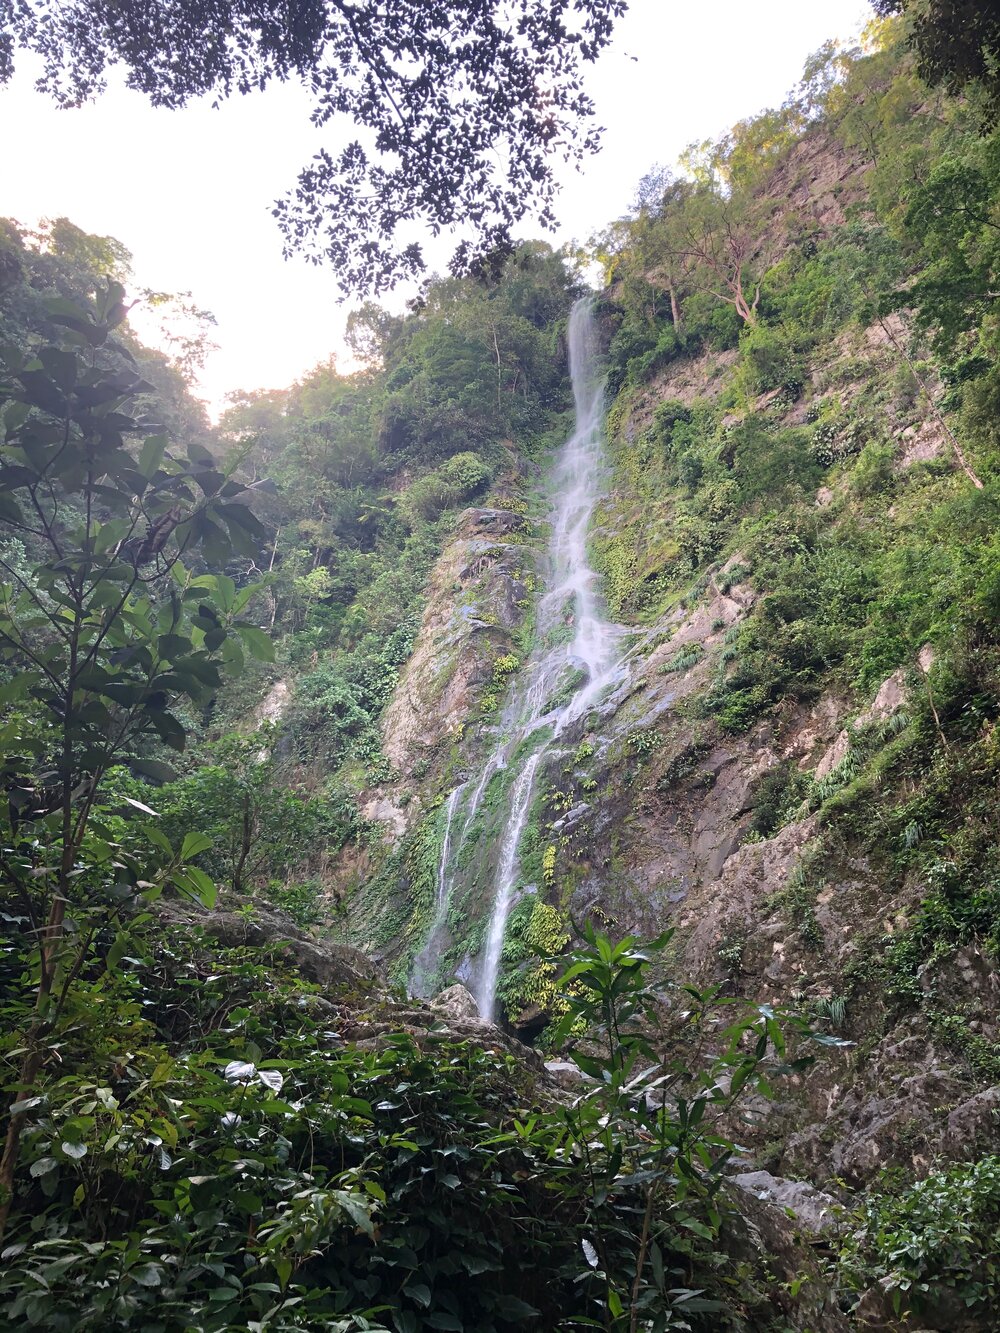 90 meter waterfall!